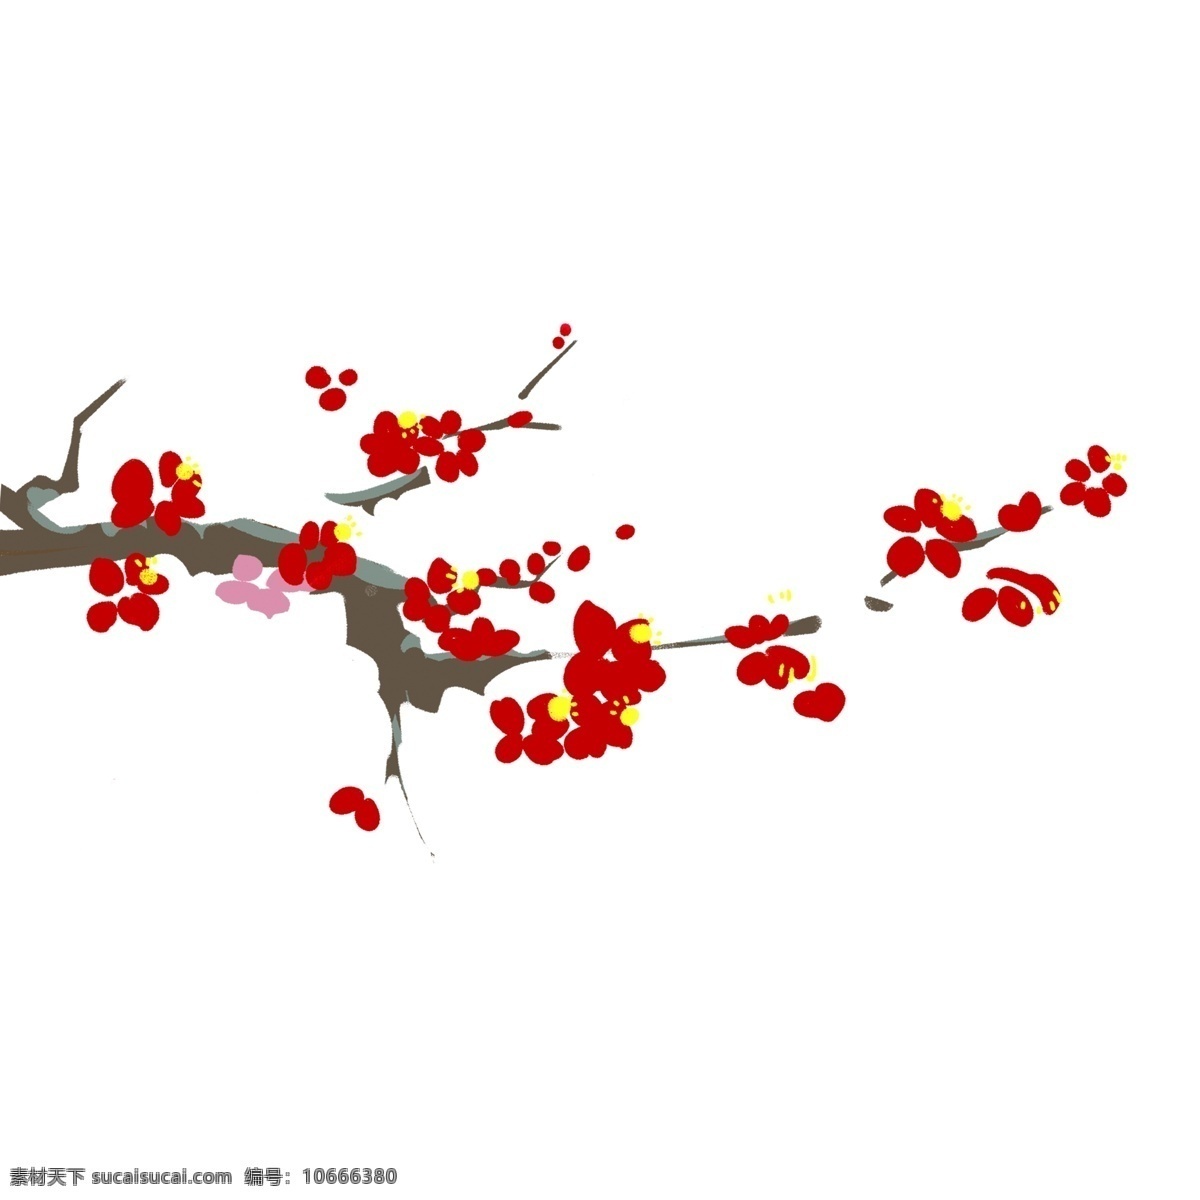 中国 风 桃花 树枝 装饰设计 中国风 卡通 插画 psd素材 手绘 花枝 春季元素